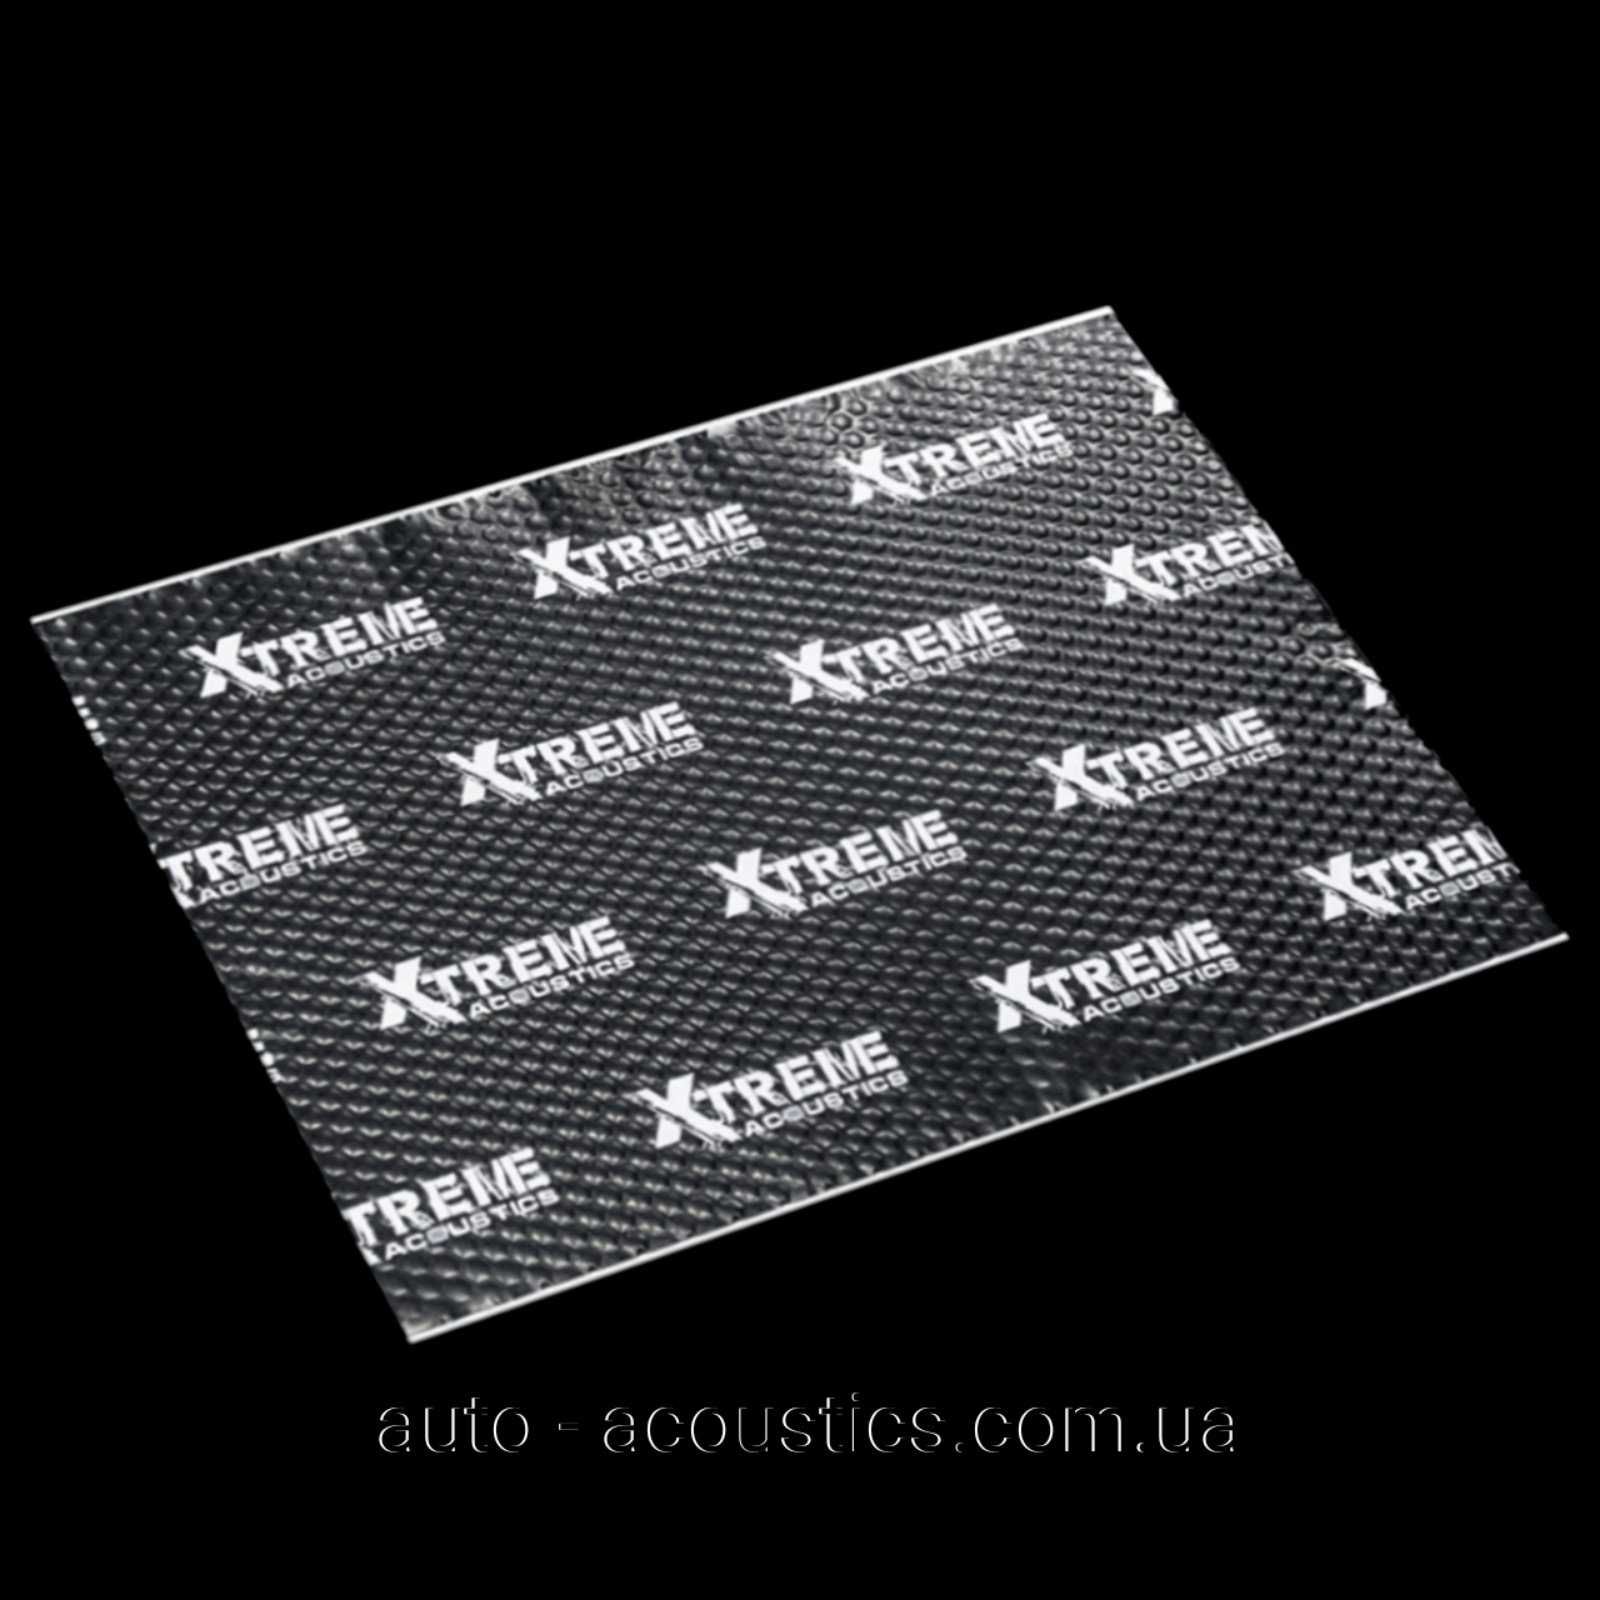 Виброизоляция Acoustics Xtreme толщиной 2-3-4мм.